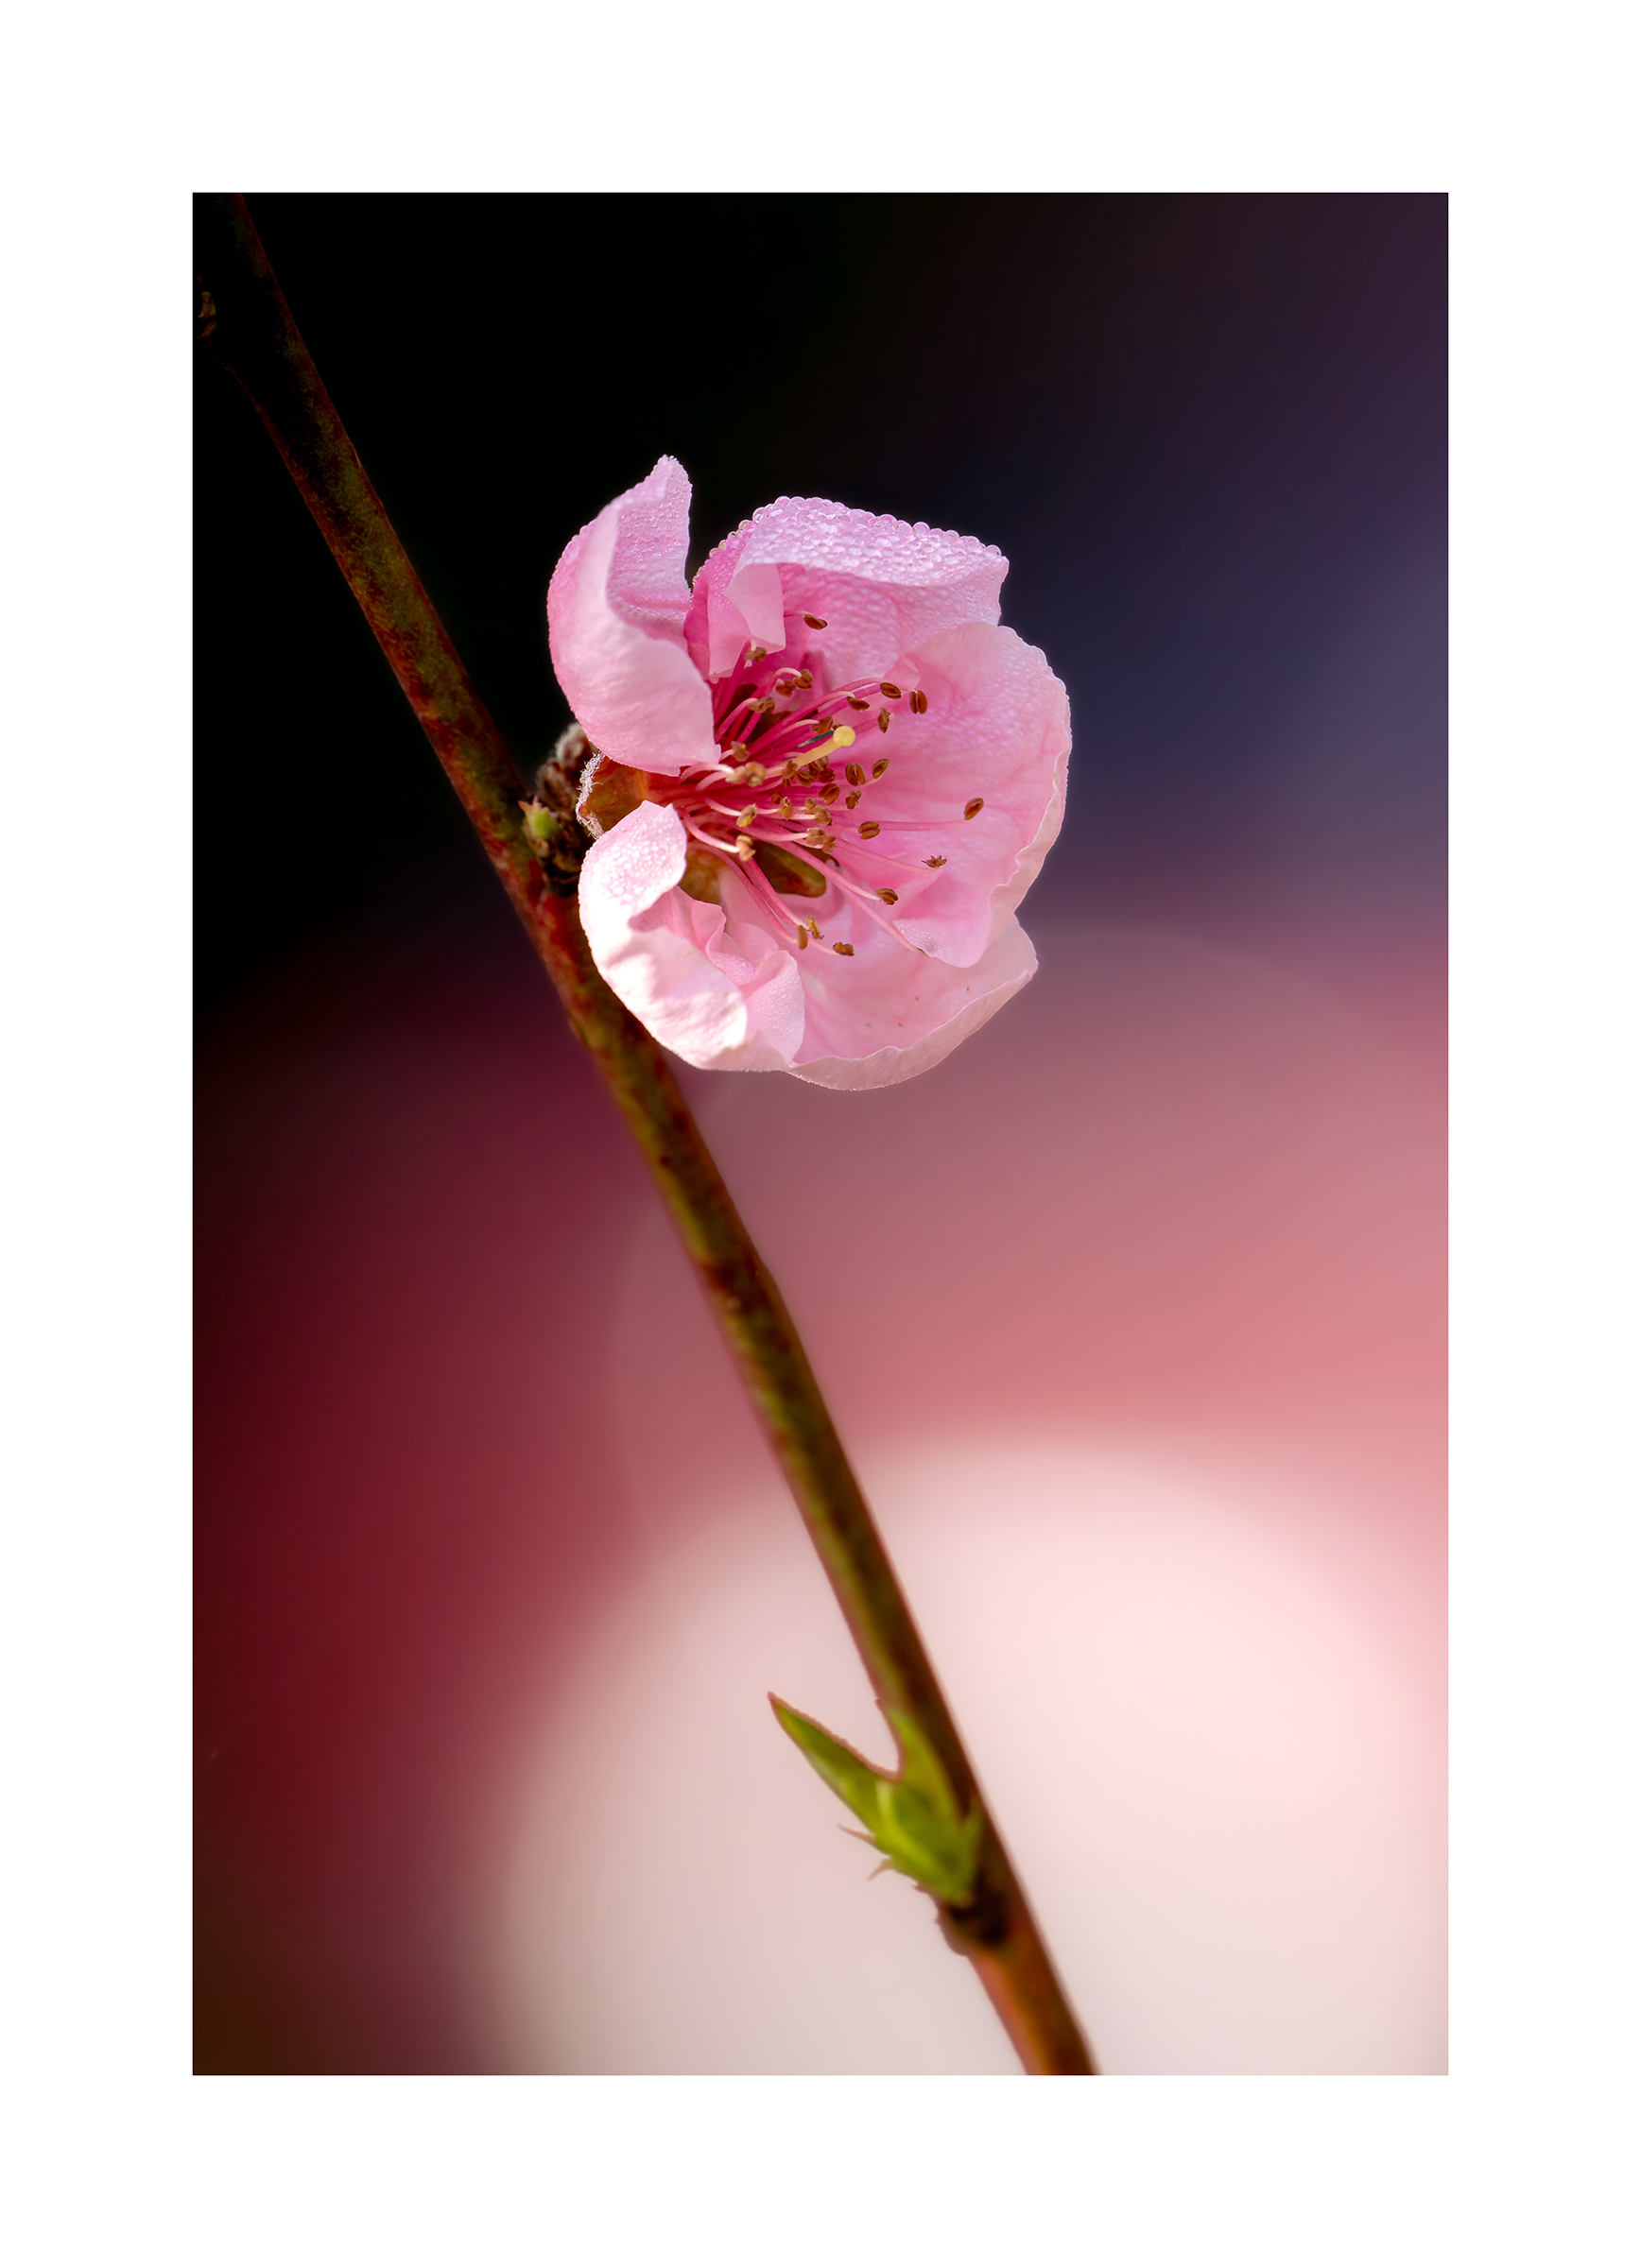 Peach blossom...